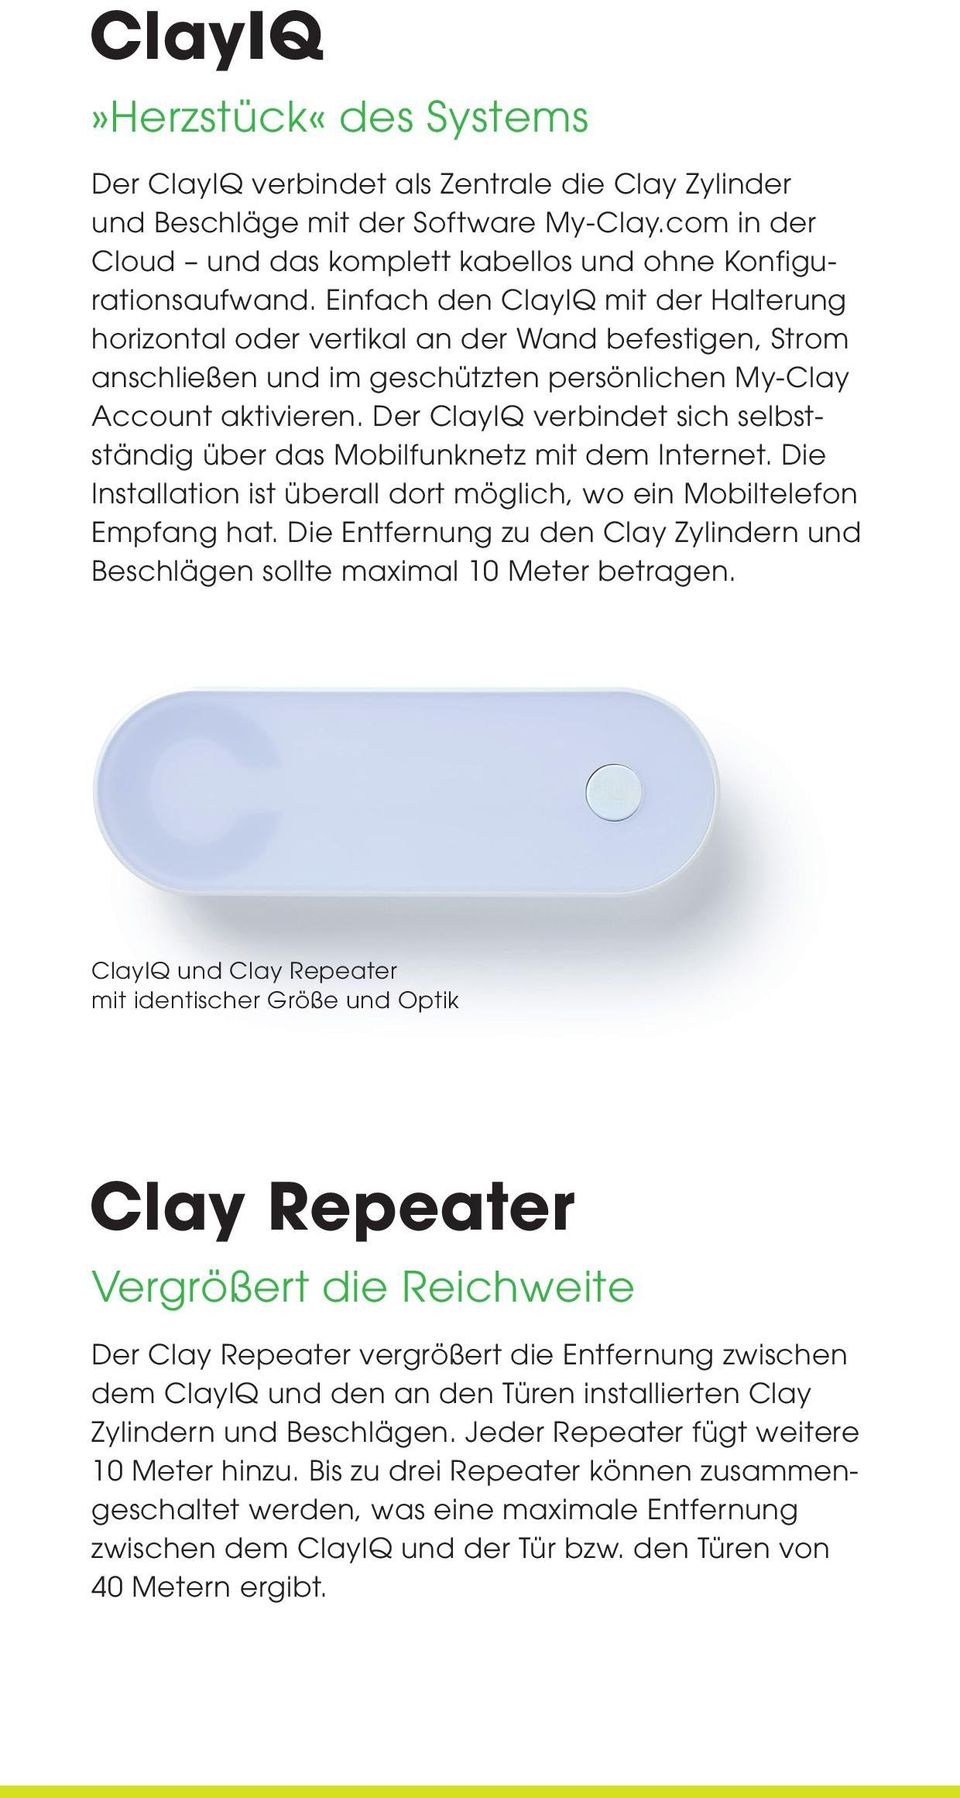 Der ClayIQ verbindet sich selbstständig über das Mobilfunknetz mit dem Internet. Die Installation ist überall dort möglich, wo ein Mobiltelefon Empfang hat.